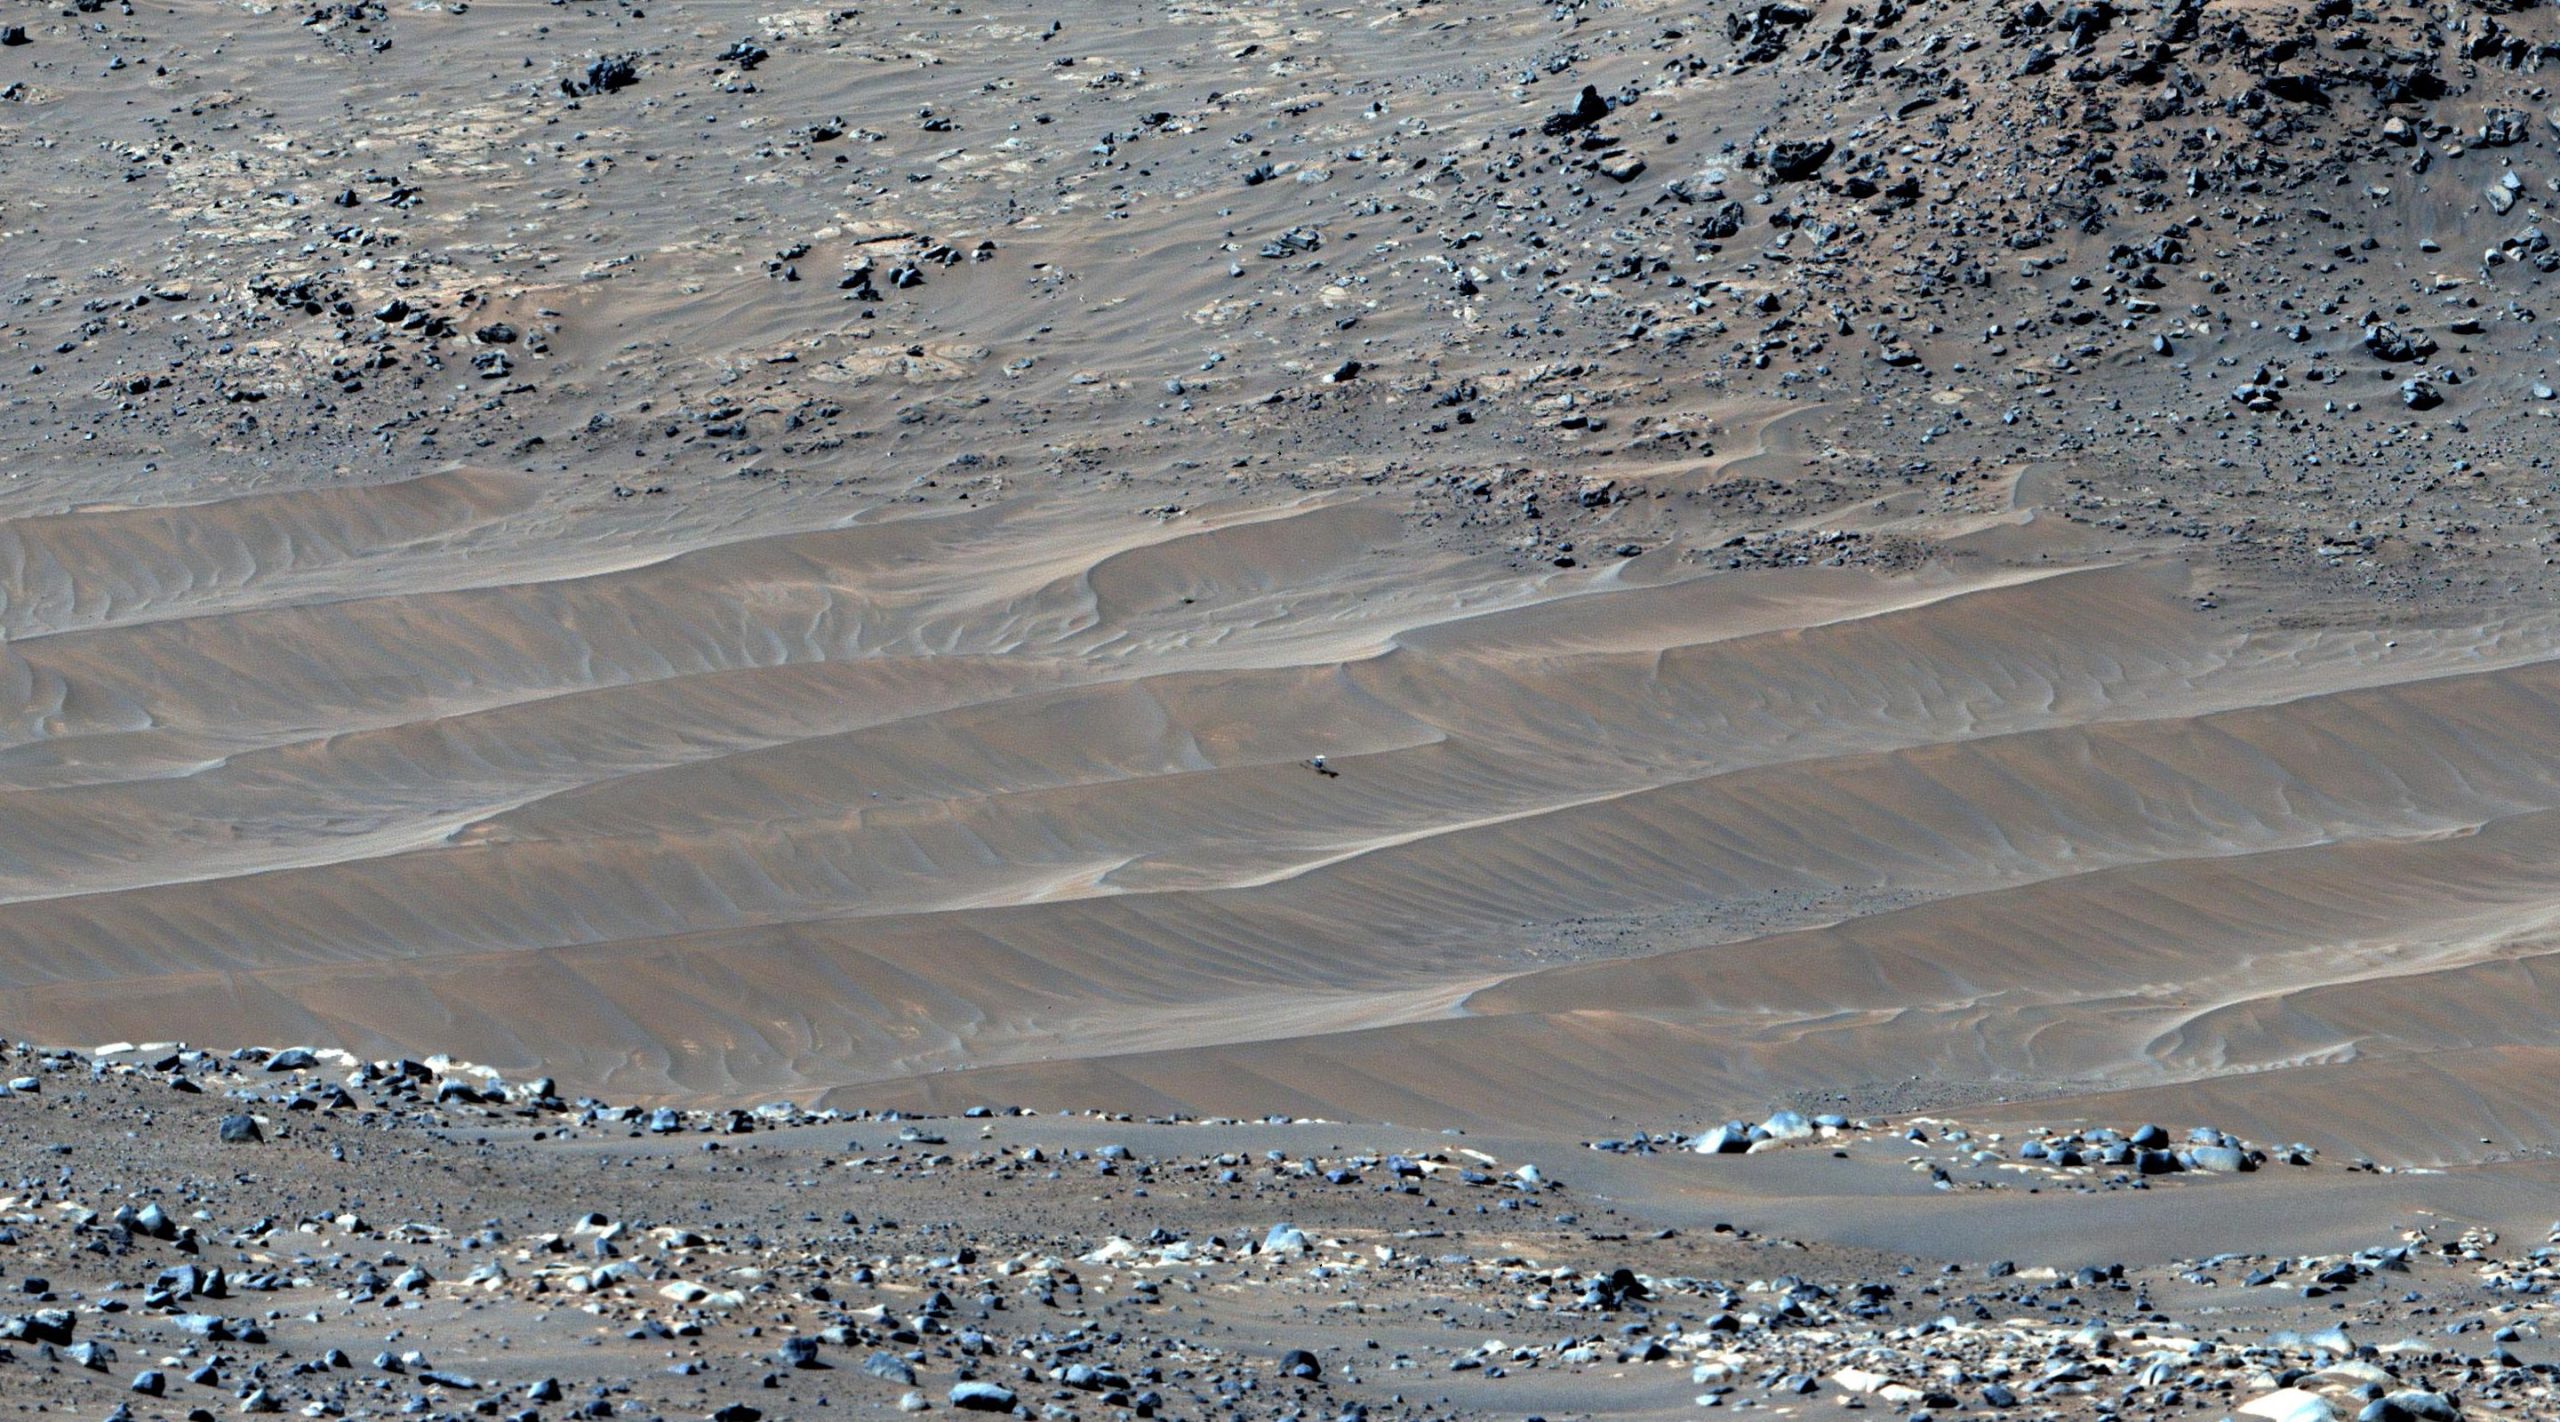 NASA's Perseverance Mars Rover ontdekt de Ingenuity-helikopter op zijn laatste rustplaats